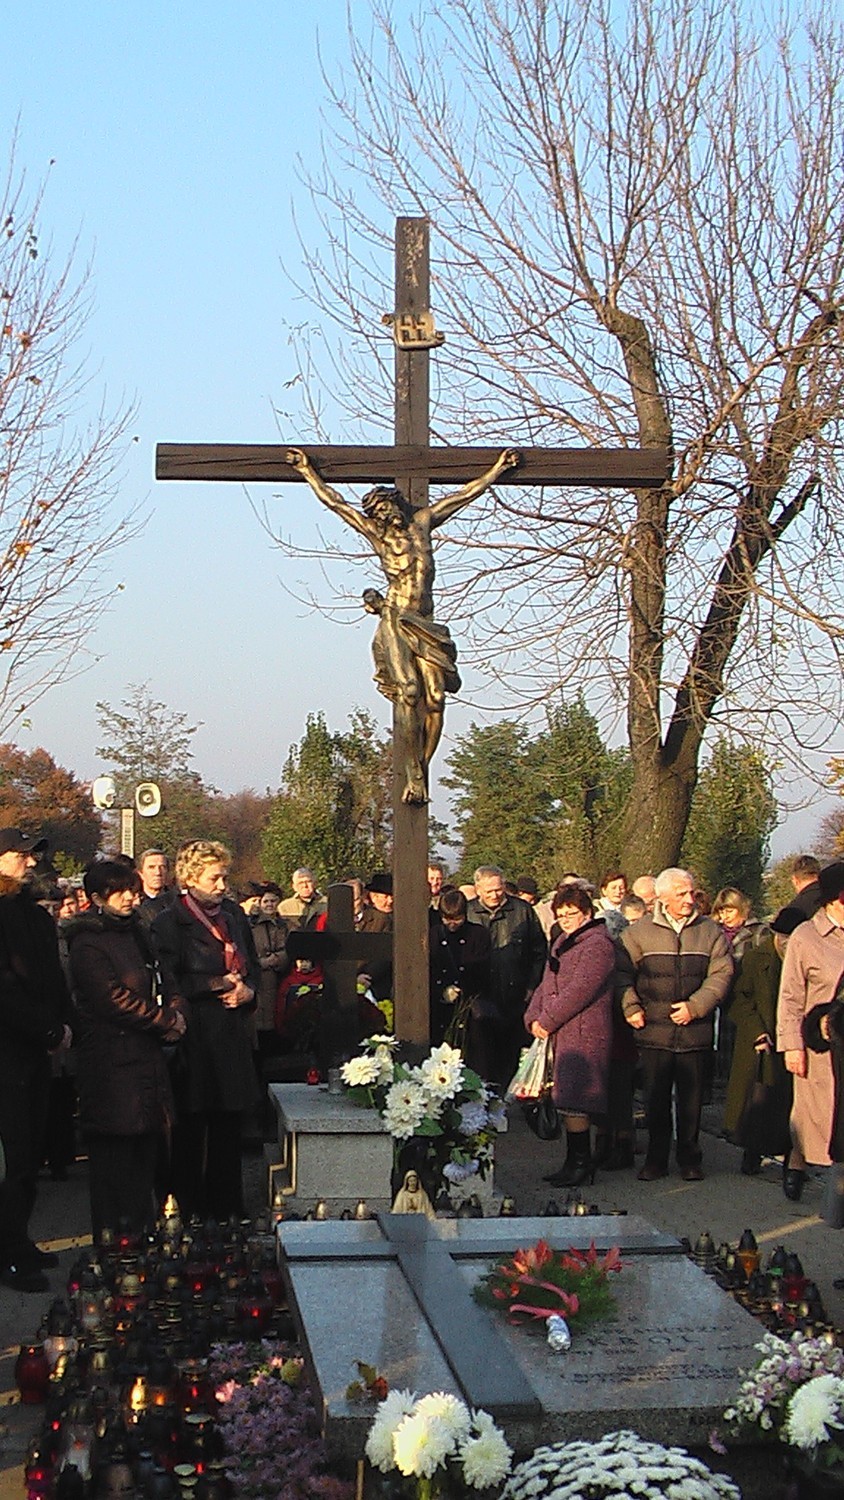 Walka z krzyżem Żory: dwa lata temu wandale zniszczyli krzyż na cmentarzu